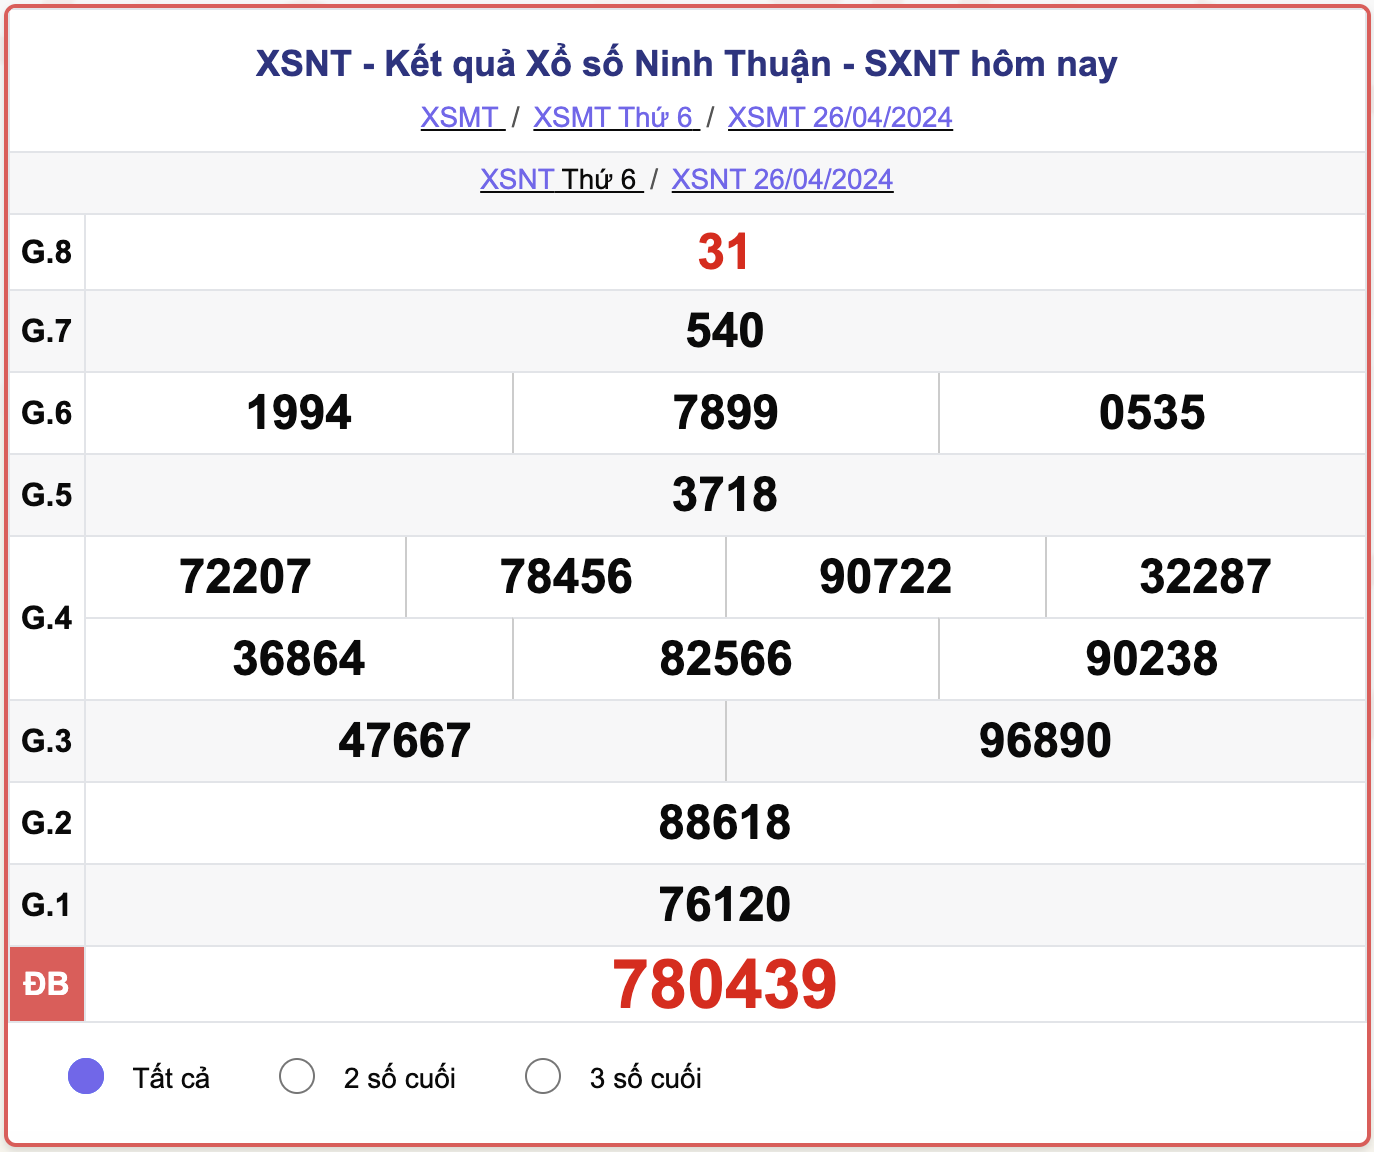 XSNT thứ Sáu, kết quả xổ số Ninh Thuận ngày 26/4/2024.